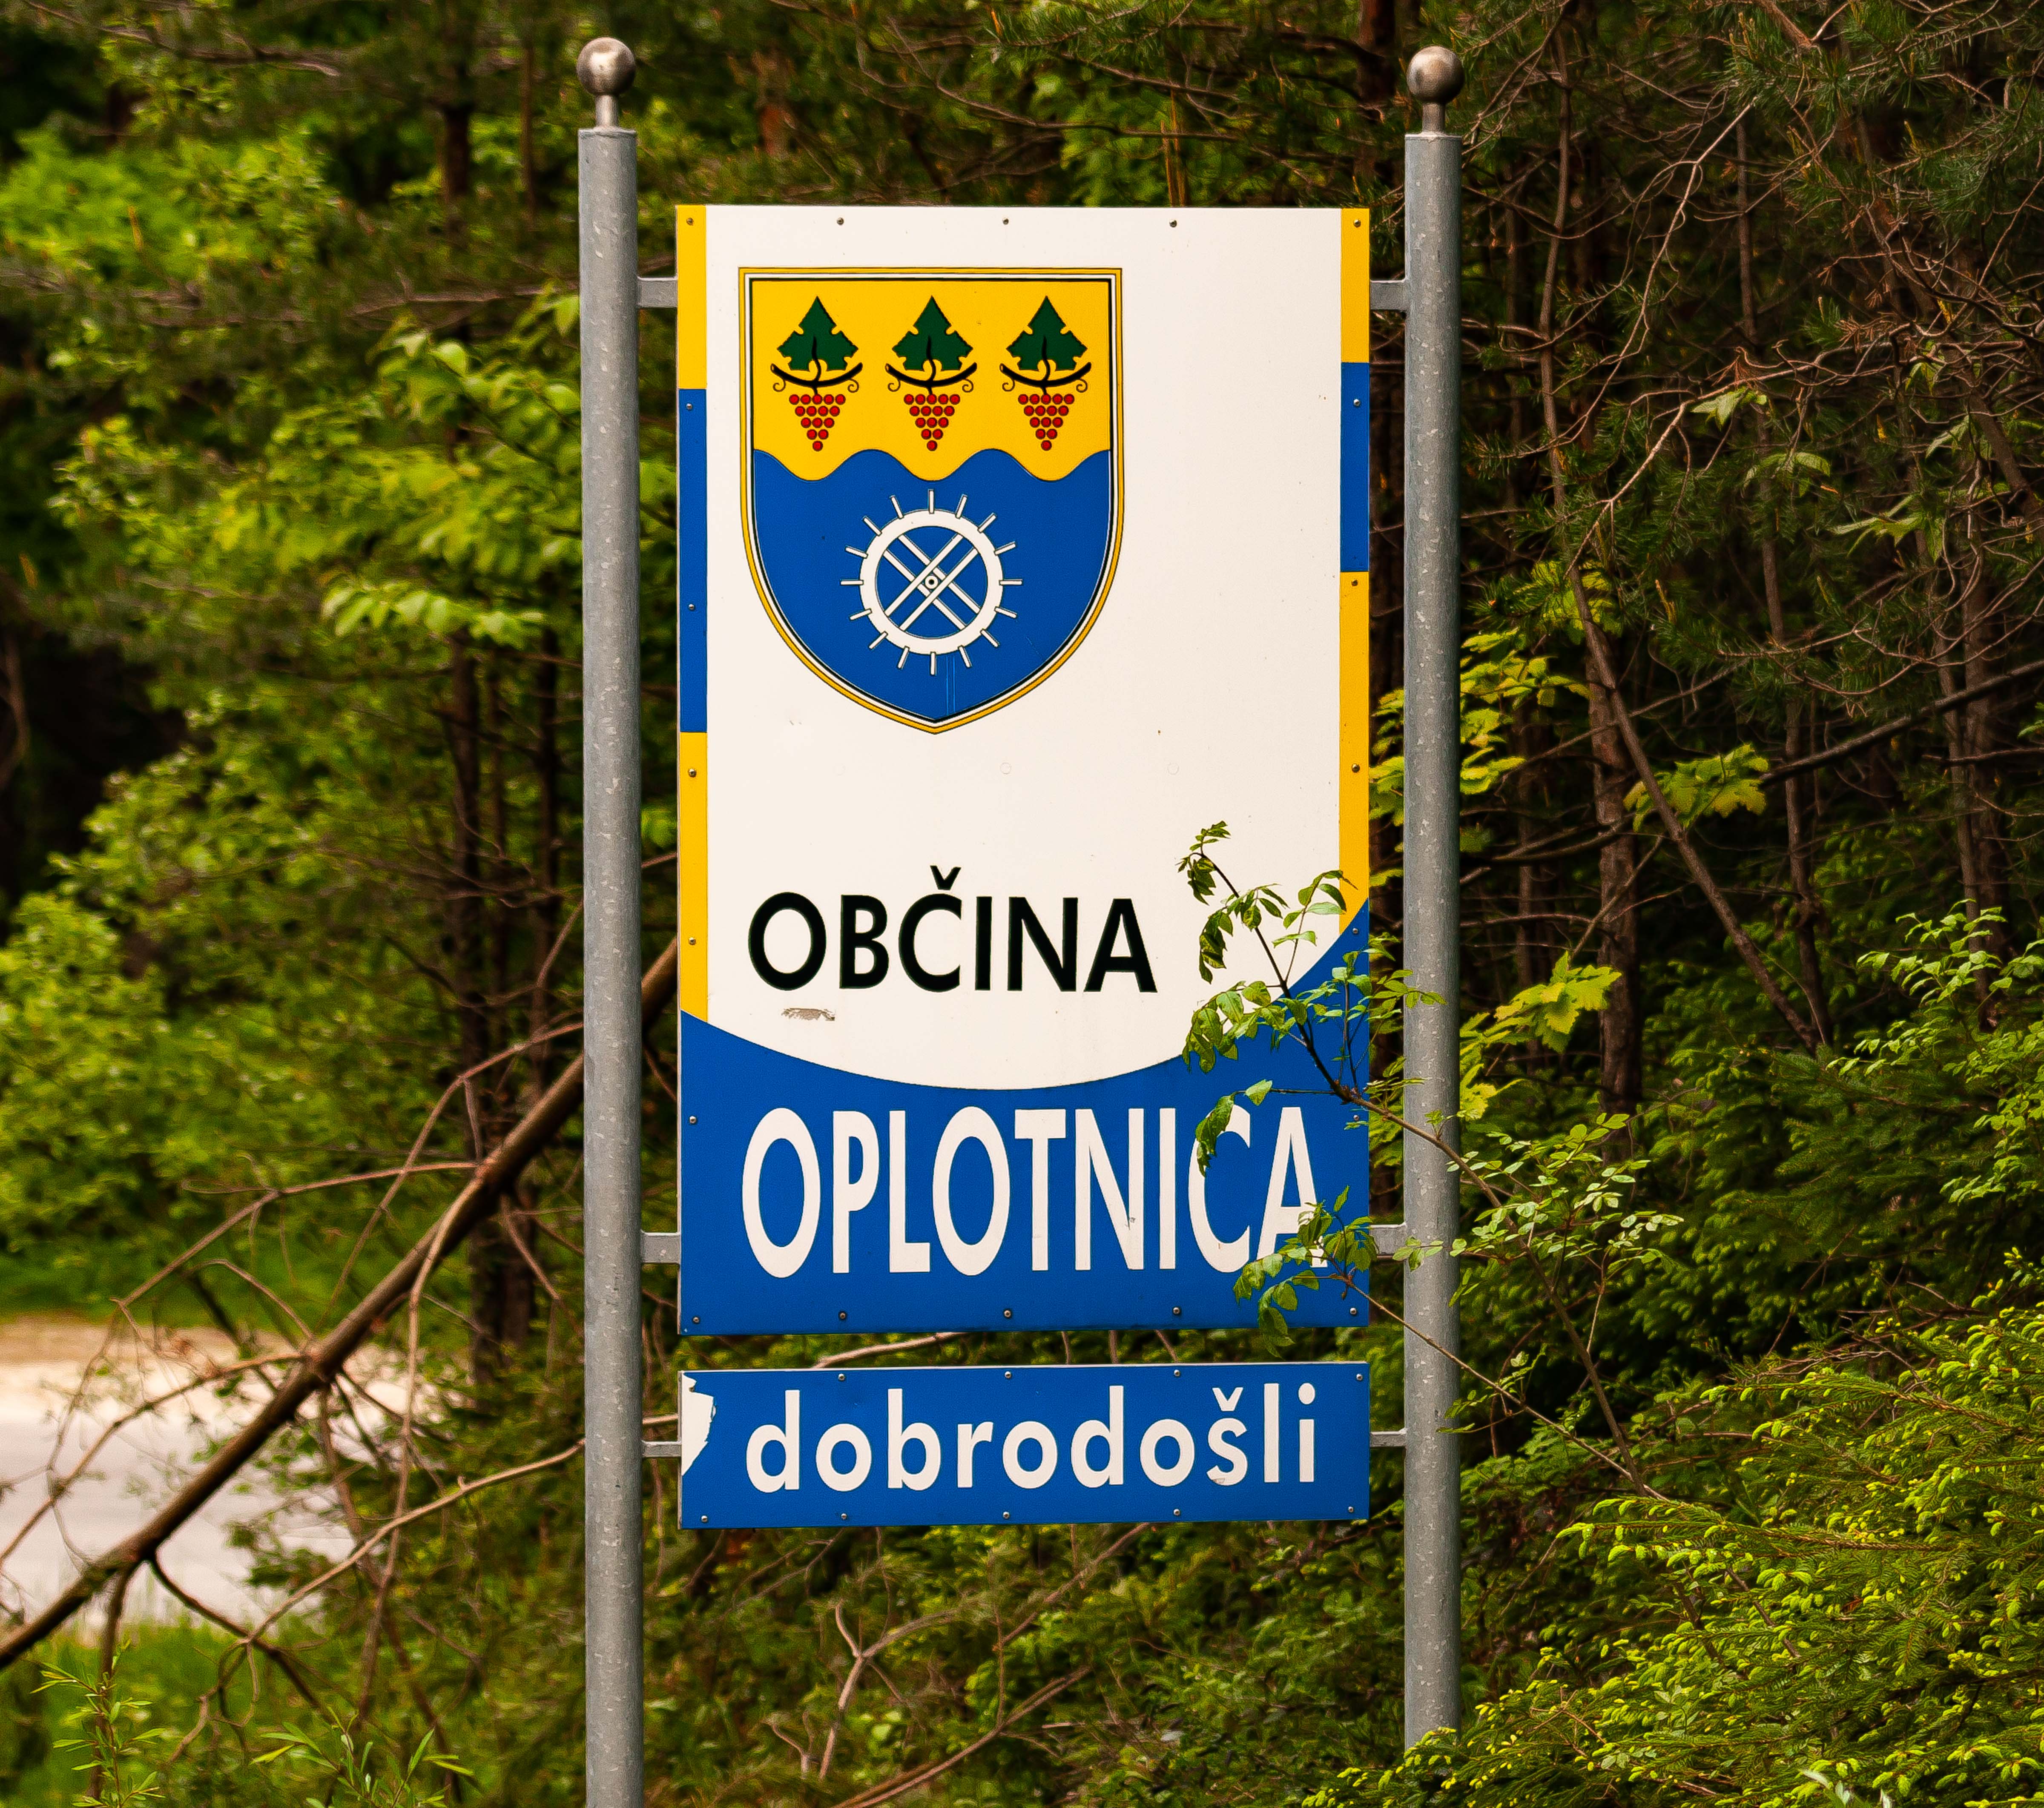 Slovenia, Oplotnica Prov, Dobrodosli Oplotnica Obcina, 2006, IMG 5645